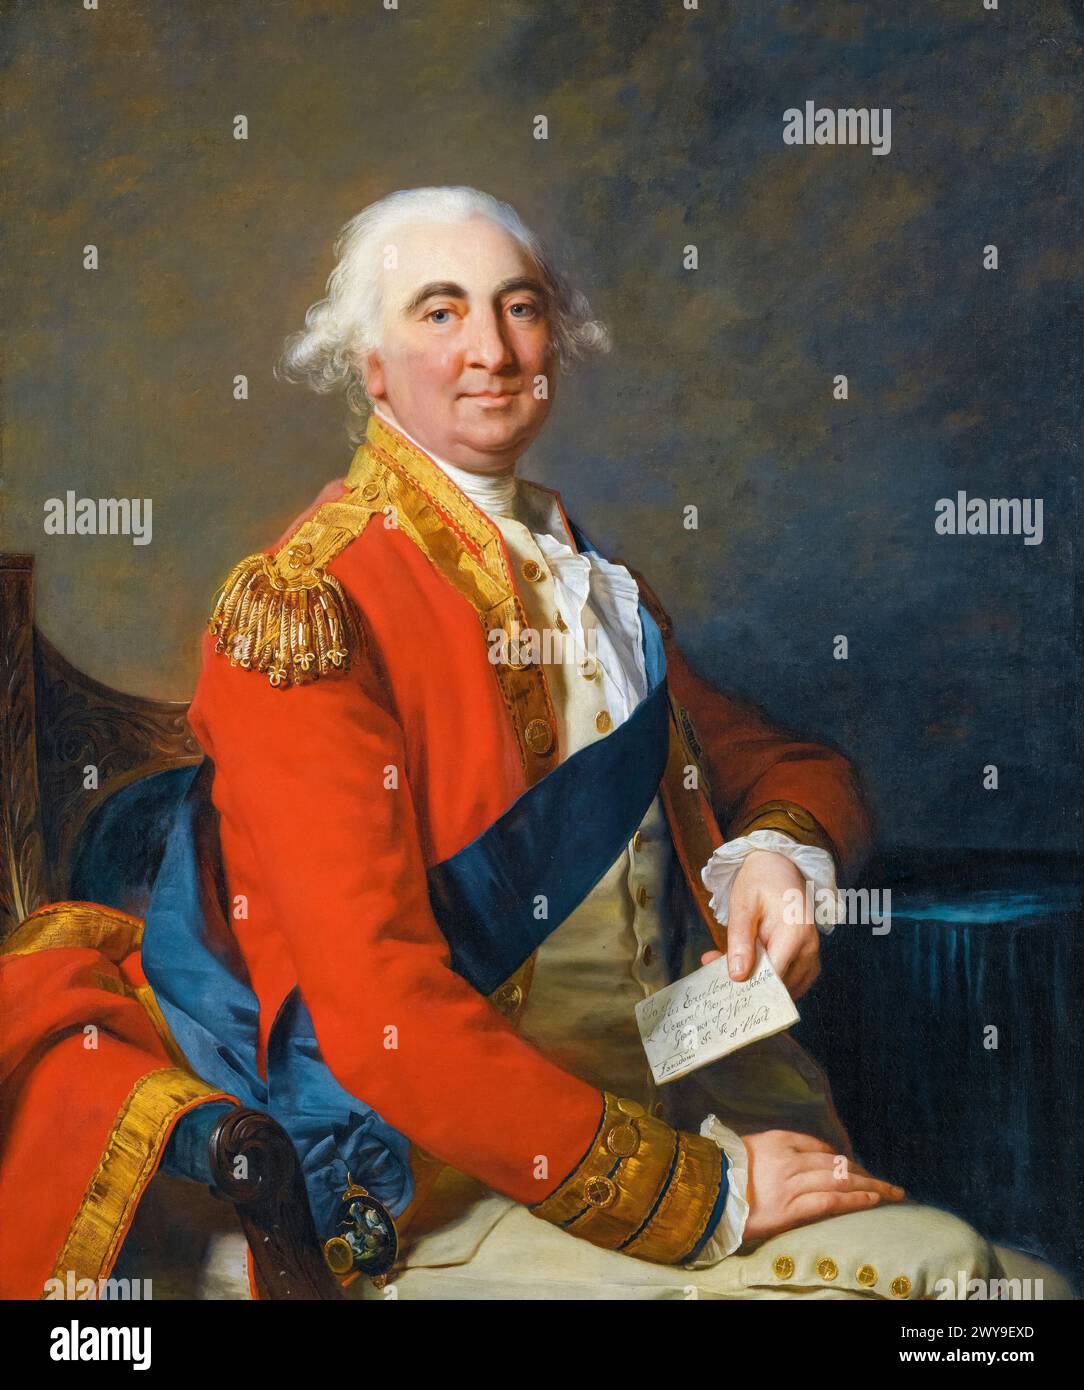 William Petty, 2e comte de Shelburne (1737-1805), homme politique whig anglo-irlandais et premier ministre de Grande-Bretagne, 1782-1783, portrait peint à l'huile sur toile par Jean-Laurent Mosnier, 1791 Banque D'Images